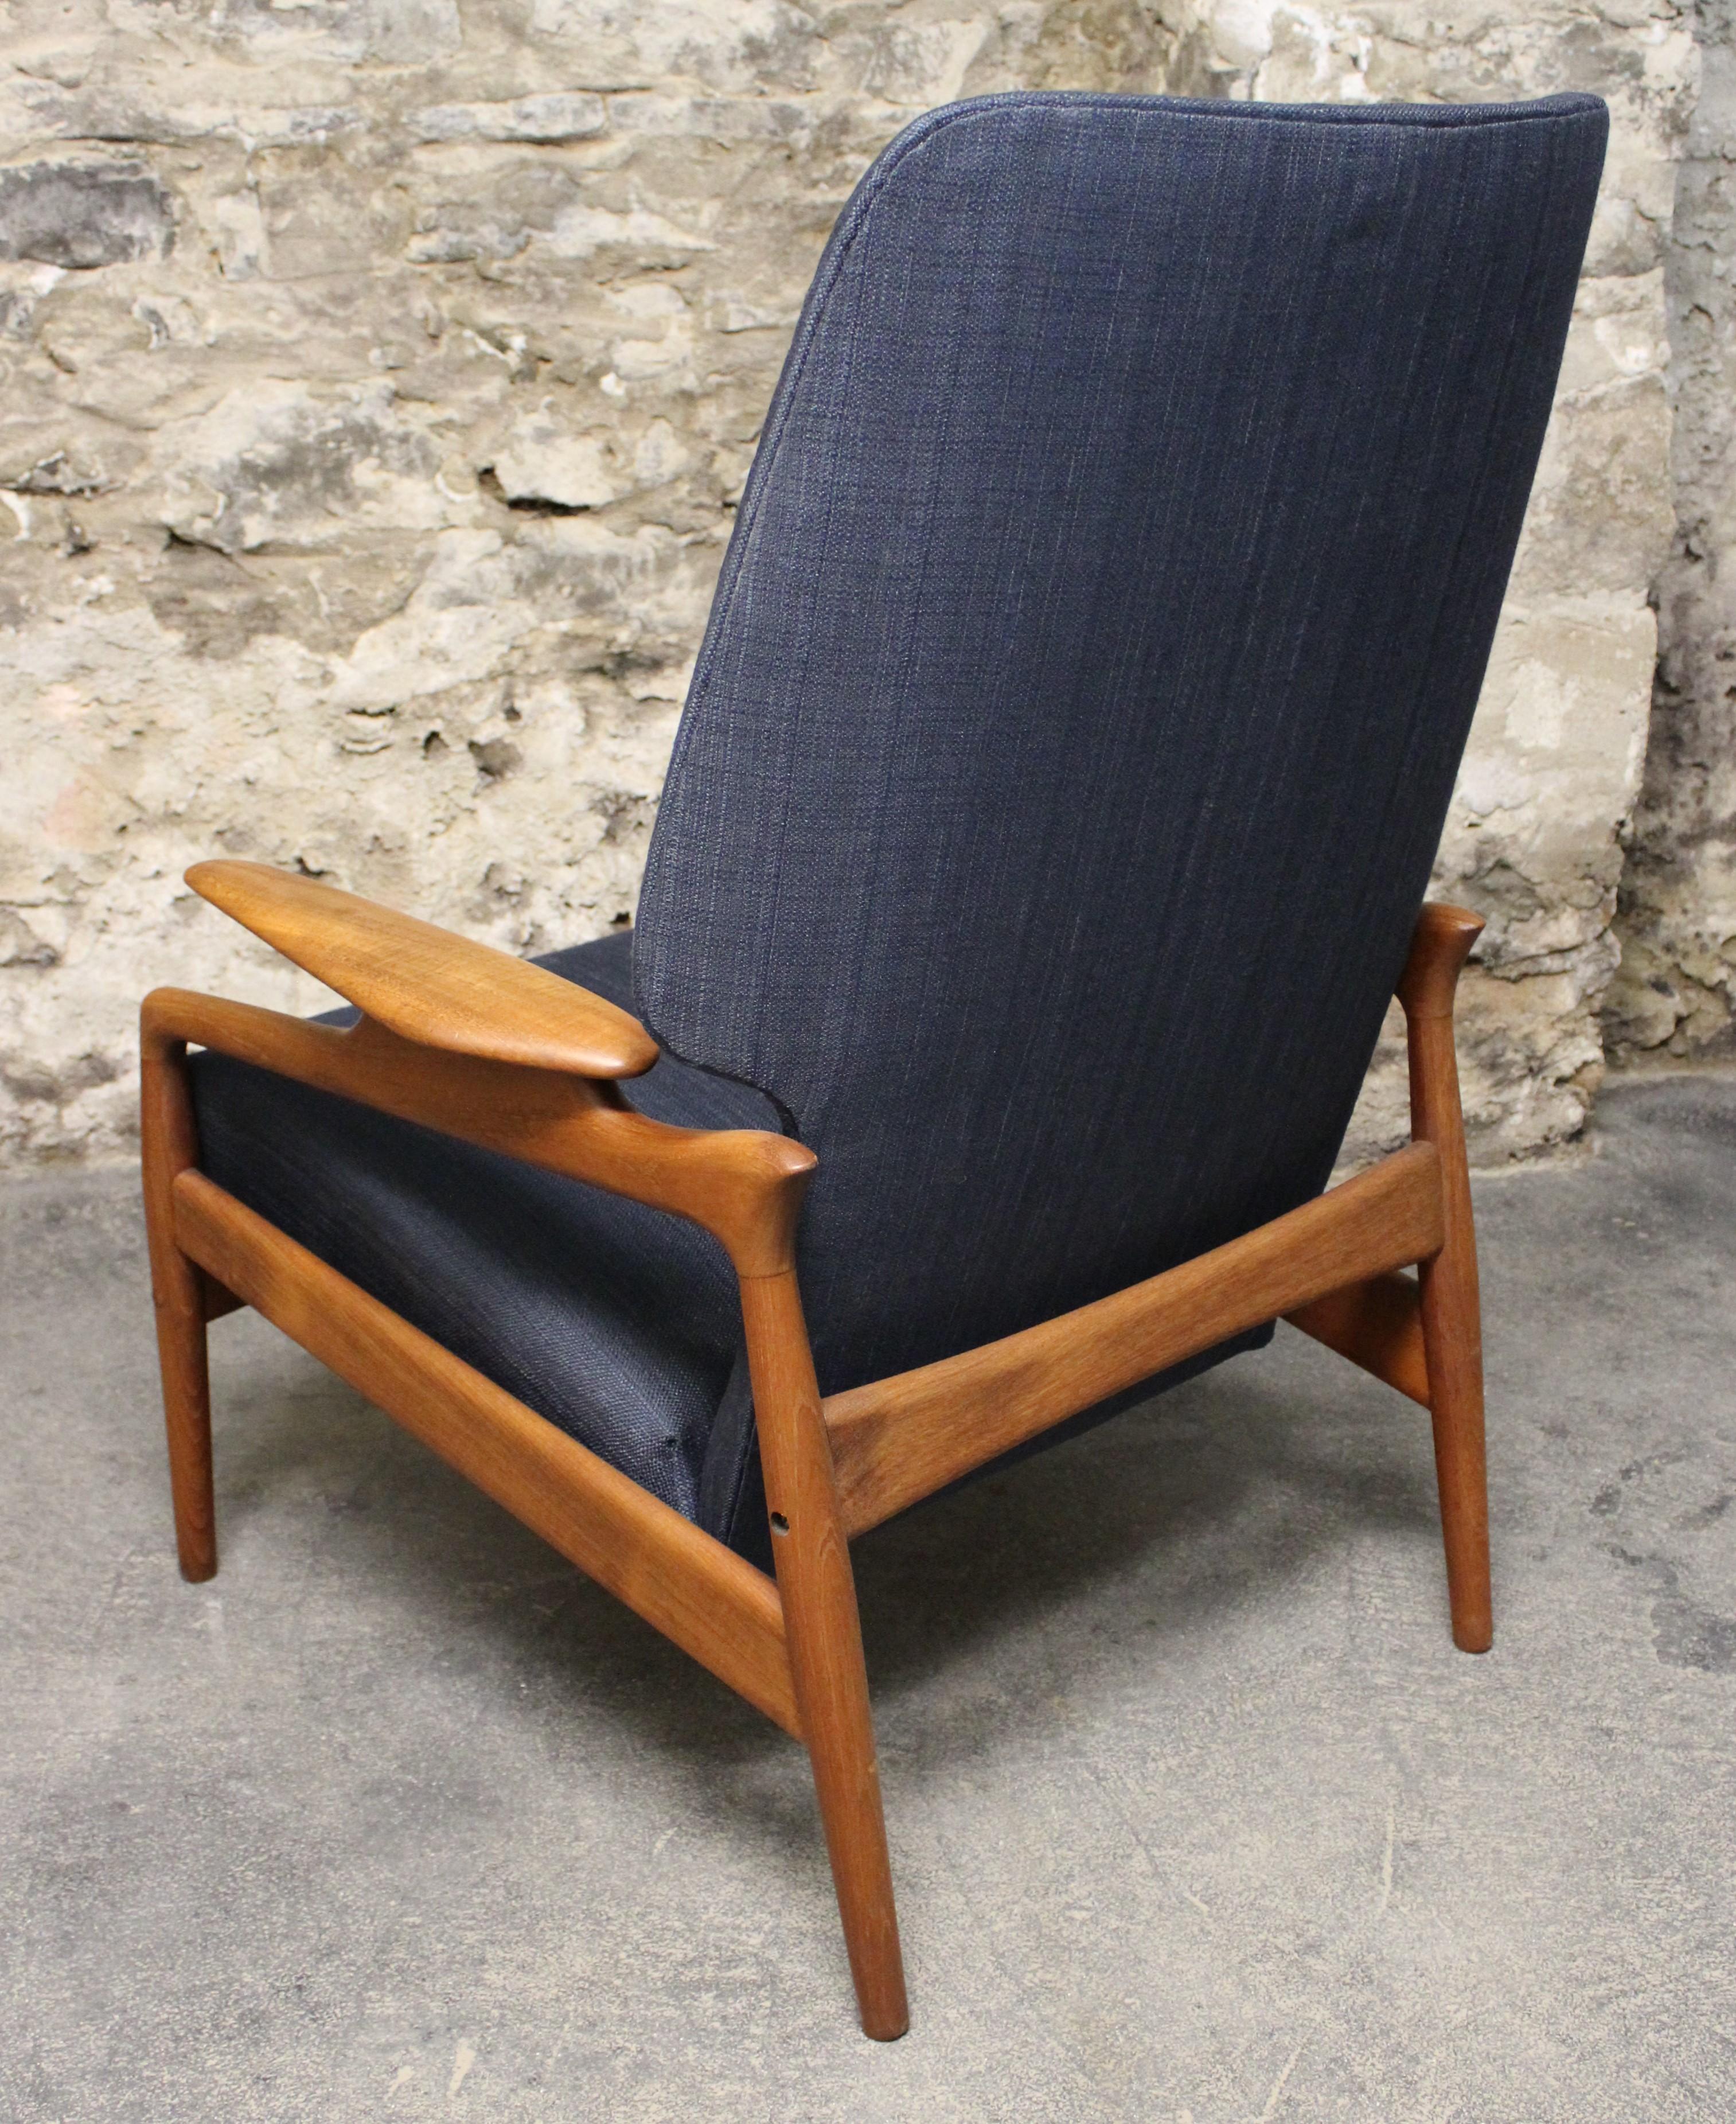 Sculptural Teak Lounge Chair by John Bone (Skandinavische Moderne)